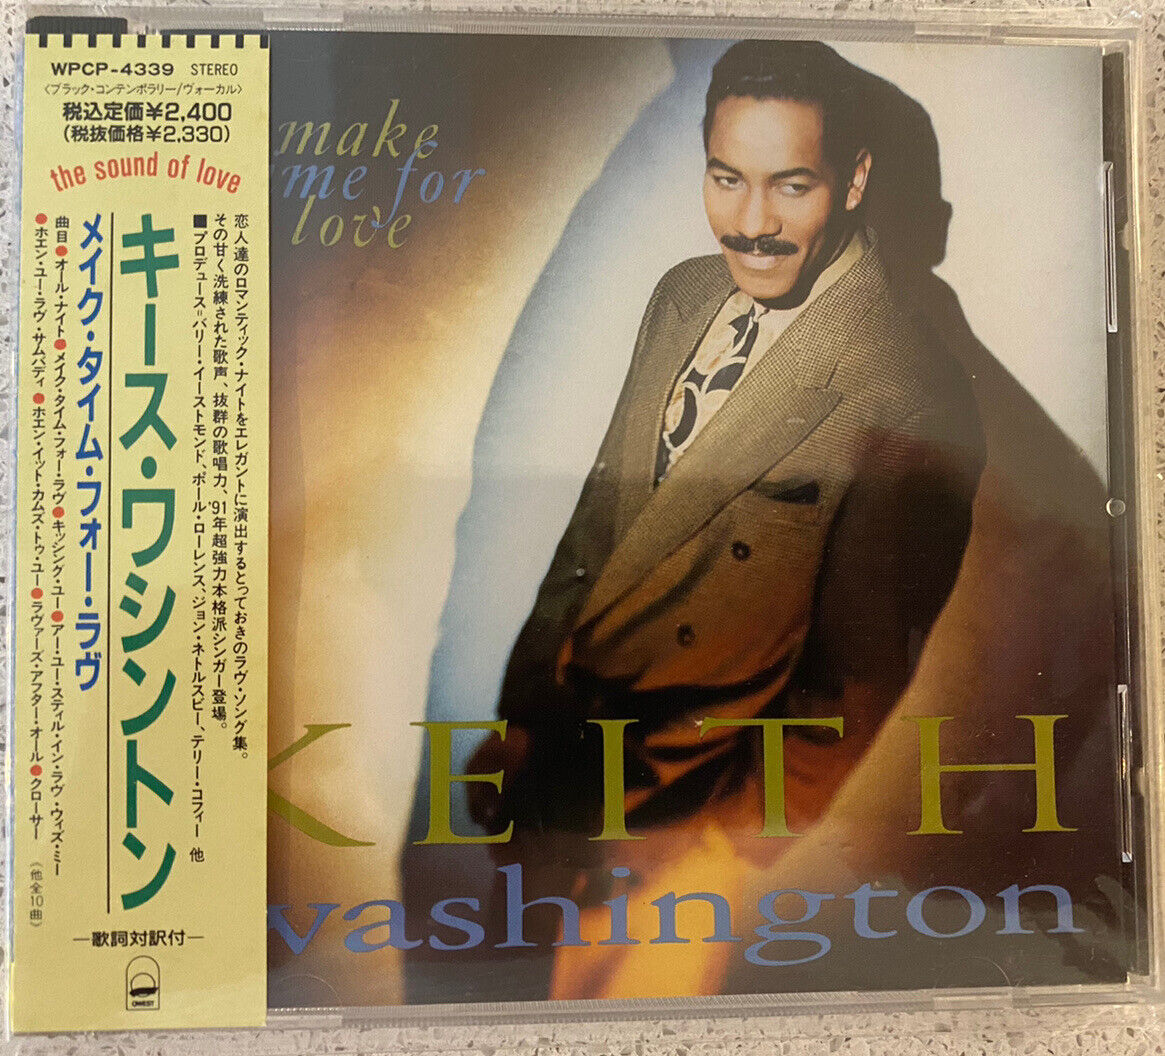 Keith Washington - Make Time For Love (CD) JAPAN OBI WPCP-4339  !!!